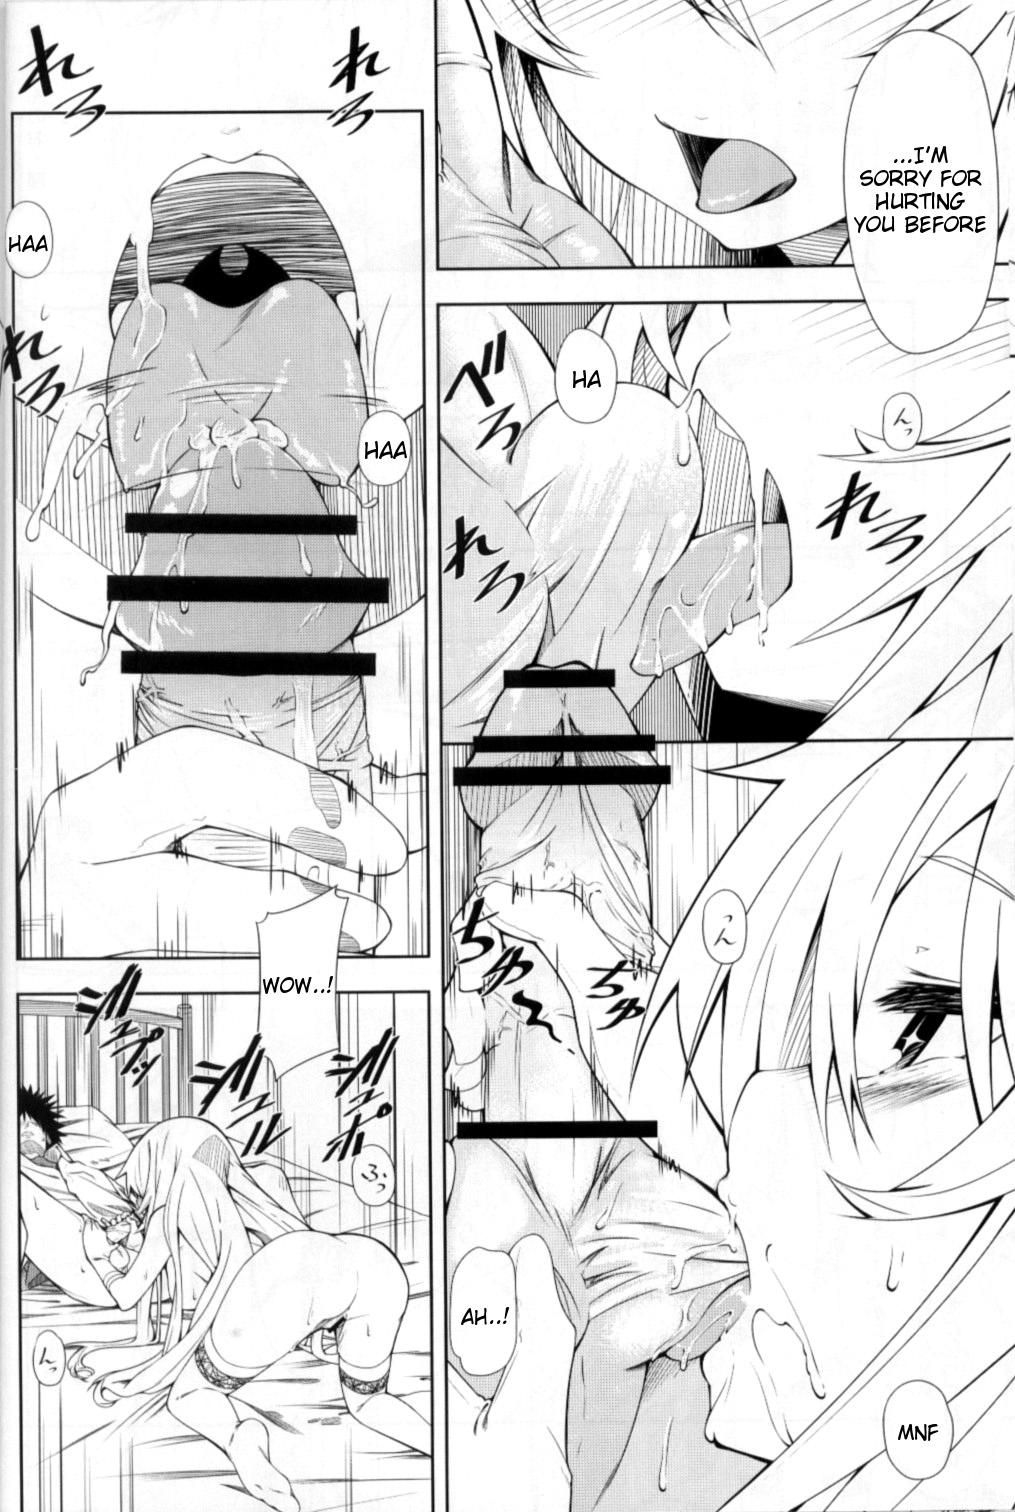 Phat Ass Shokuhou-san no 5x0 - Toaru kagaku no railgun Chudai - Page 9